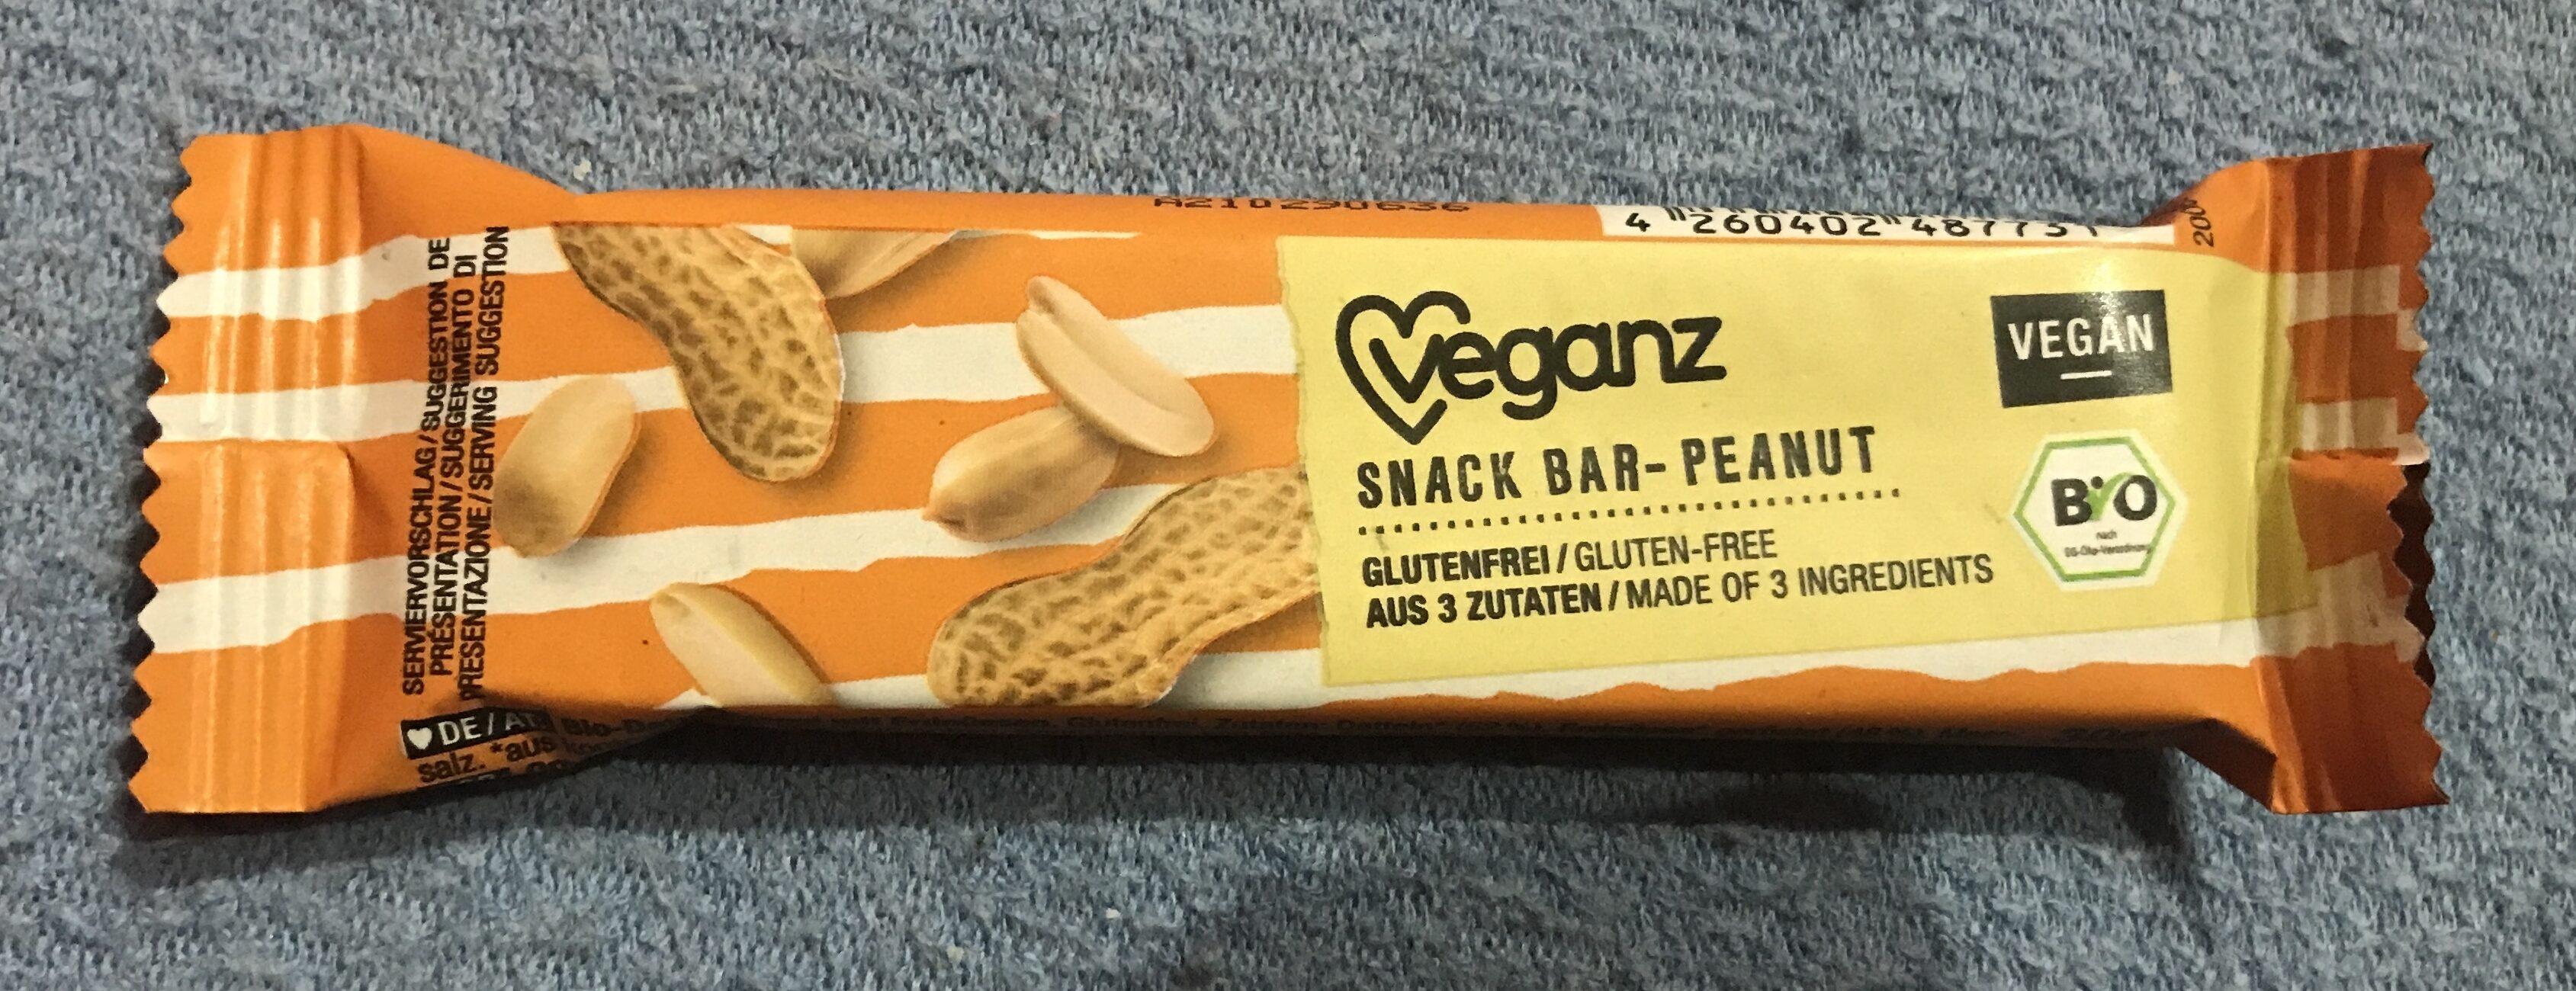 Snack bar Peanut - Prodotto - de